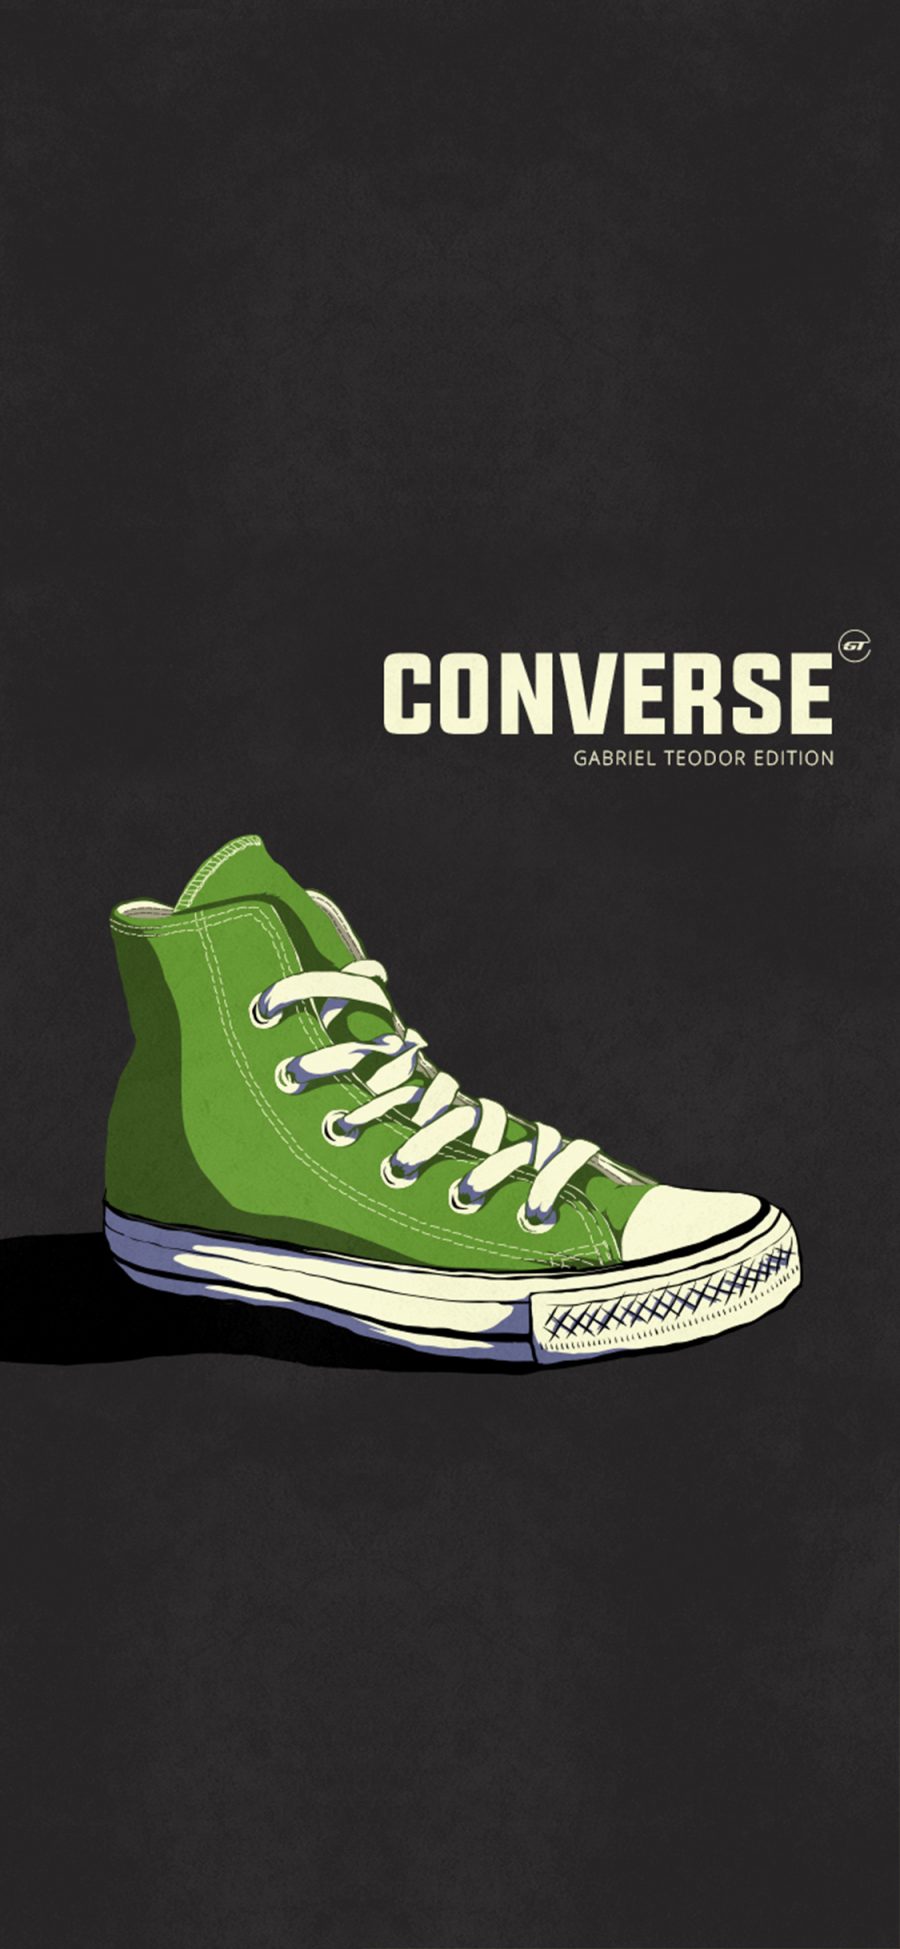 [2436×1125]插图 品牌 鞋子 匡威 绿色 苹果手机动漫壁纸图片